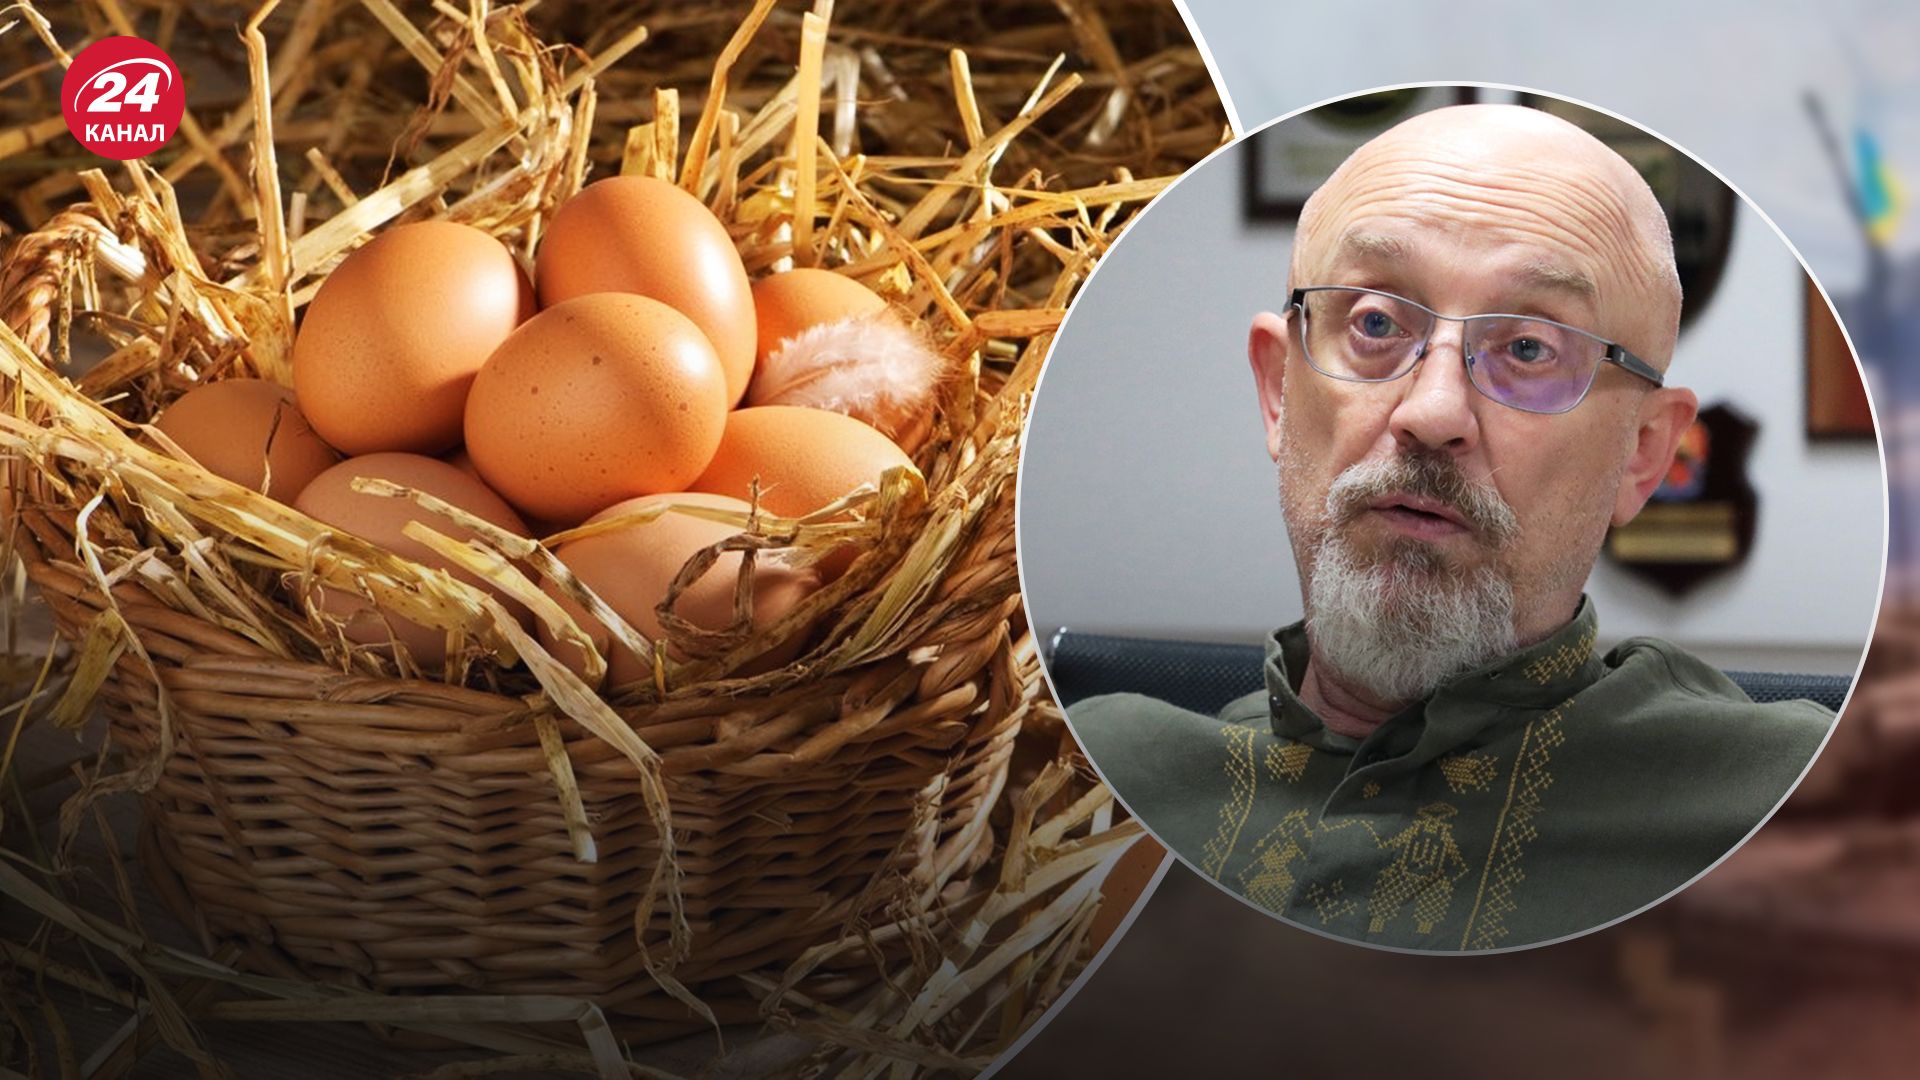 Резніков прокоментува закупівлю "яєць по 17 гривень"